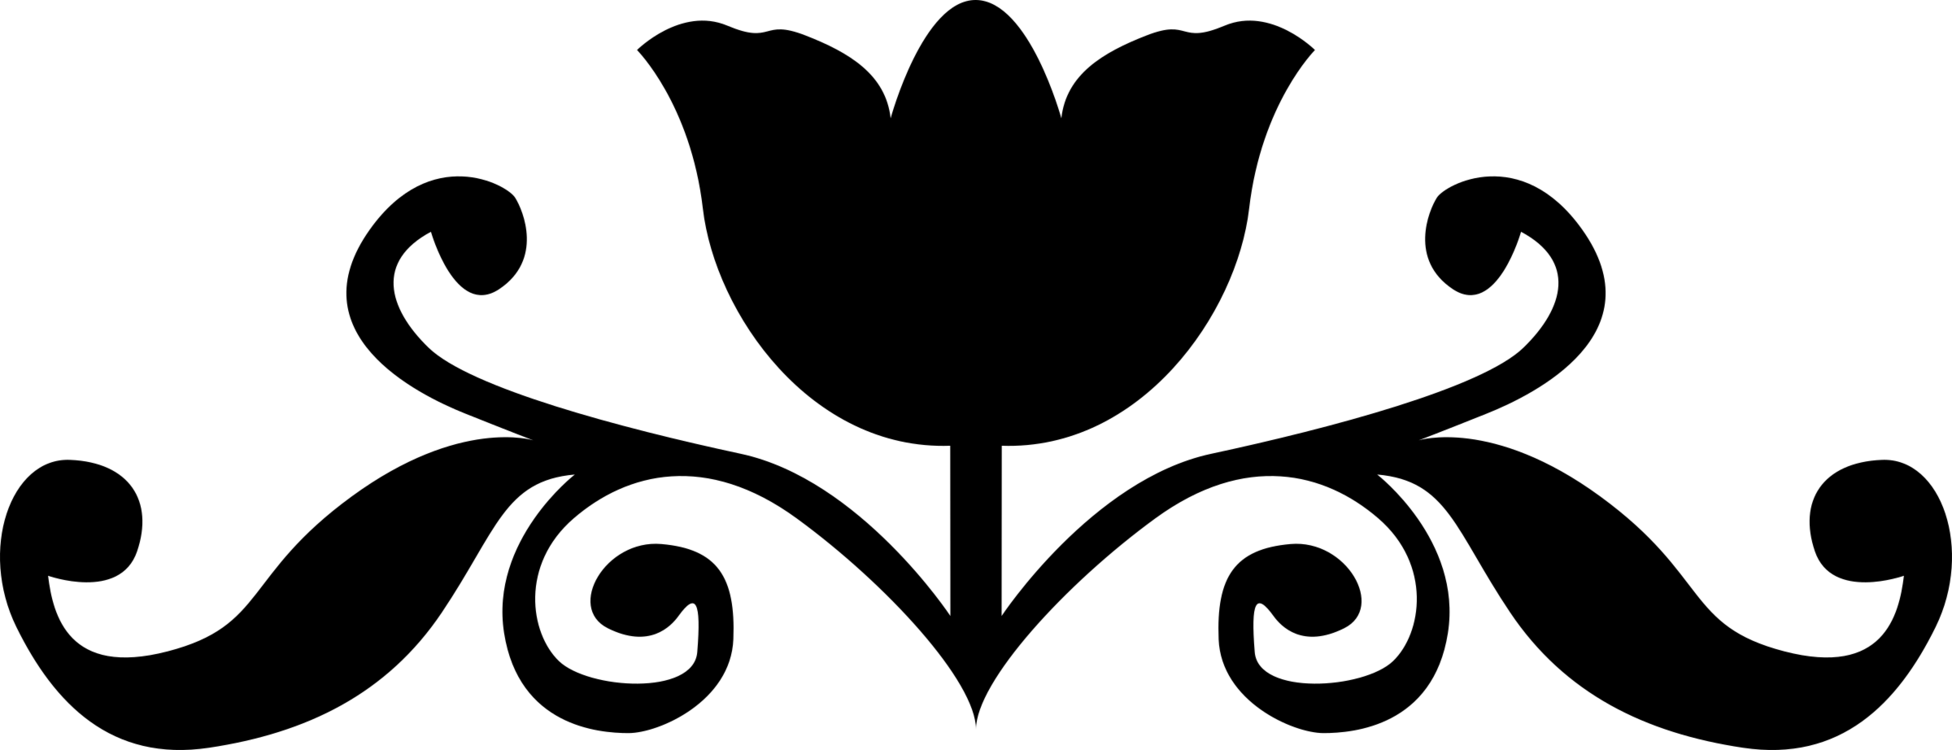 Black Flower Logo - Silhouette Rose Black and white Flower Logo free commercial clipart ...